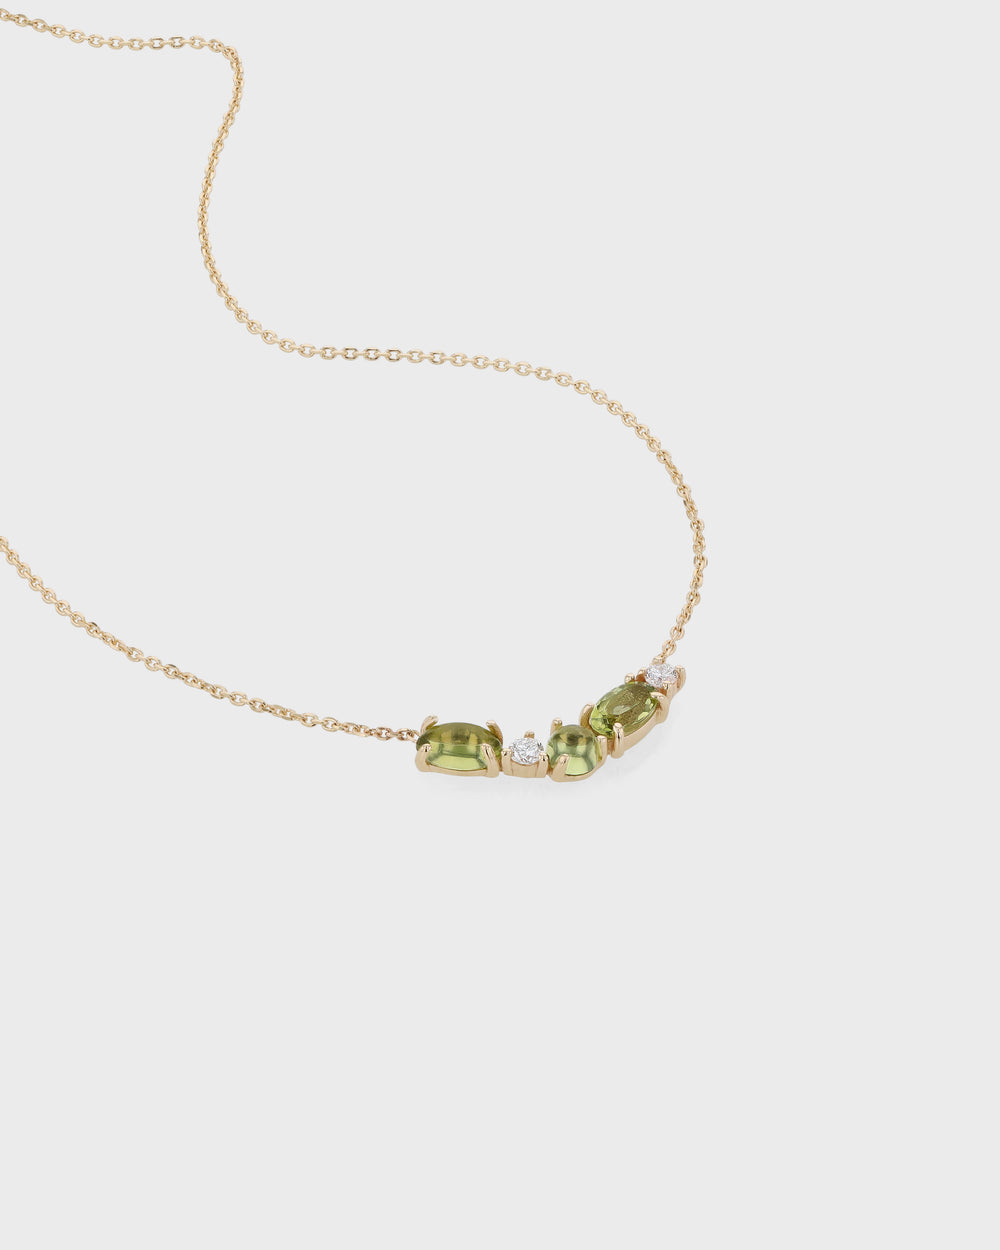 Peridot and Diamond Necklace - The Jewelry Magazine